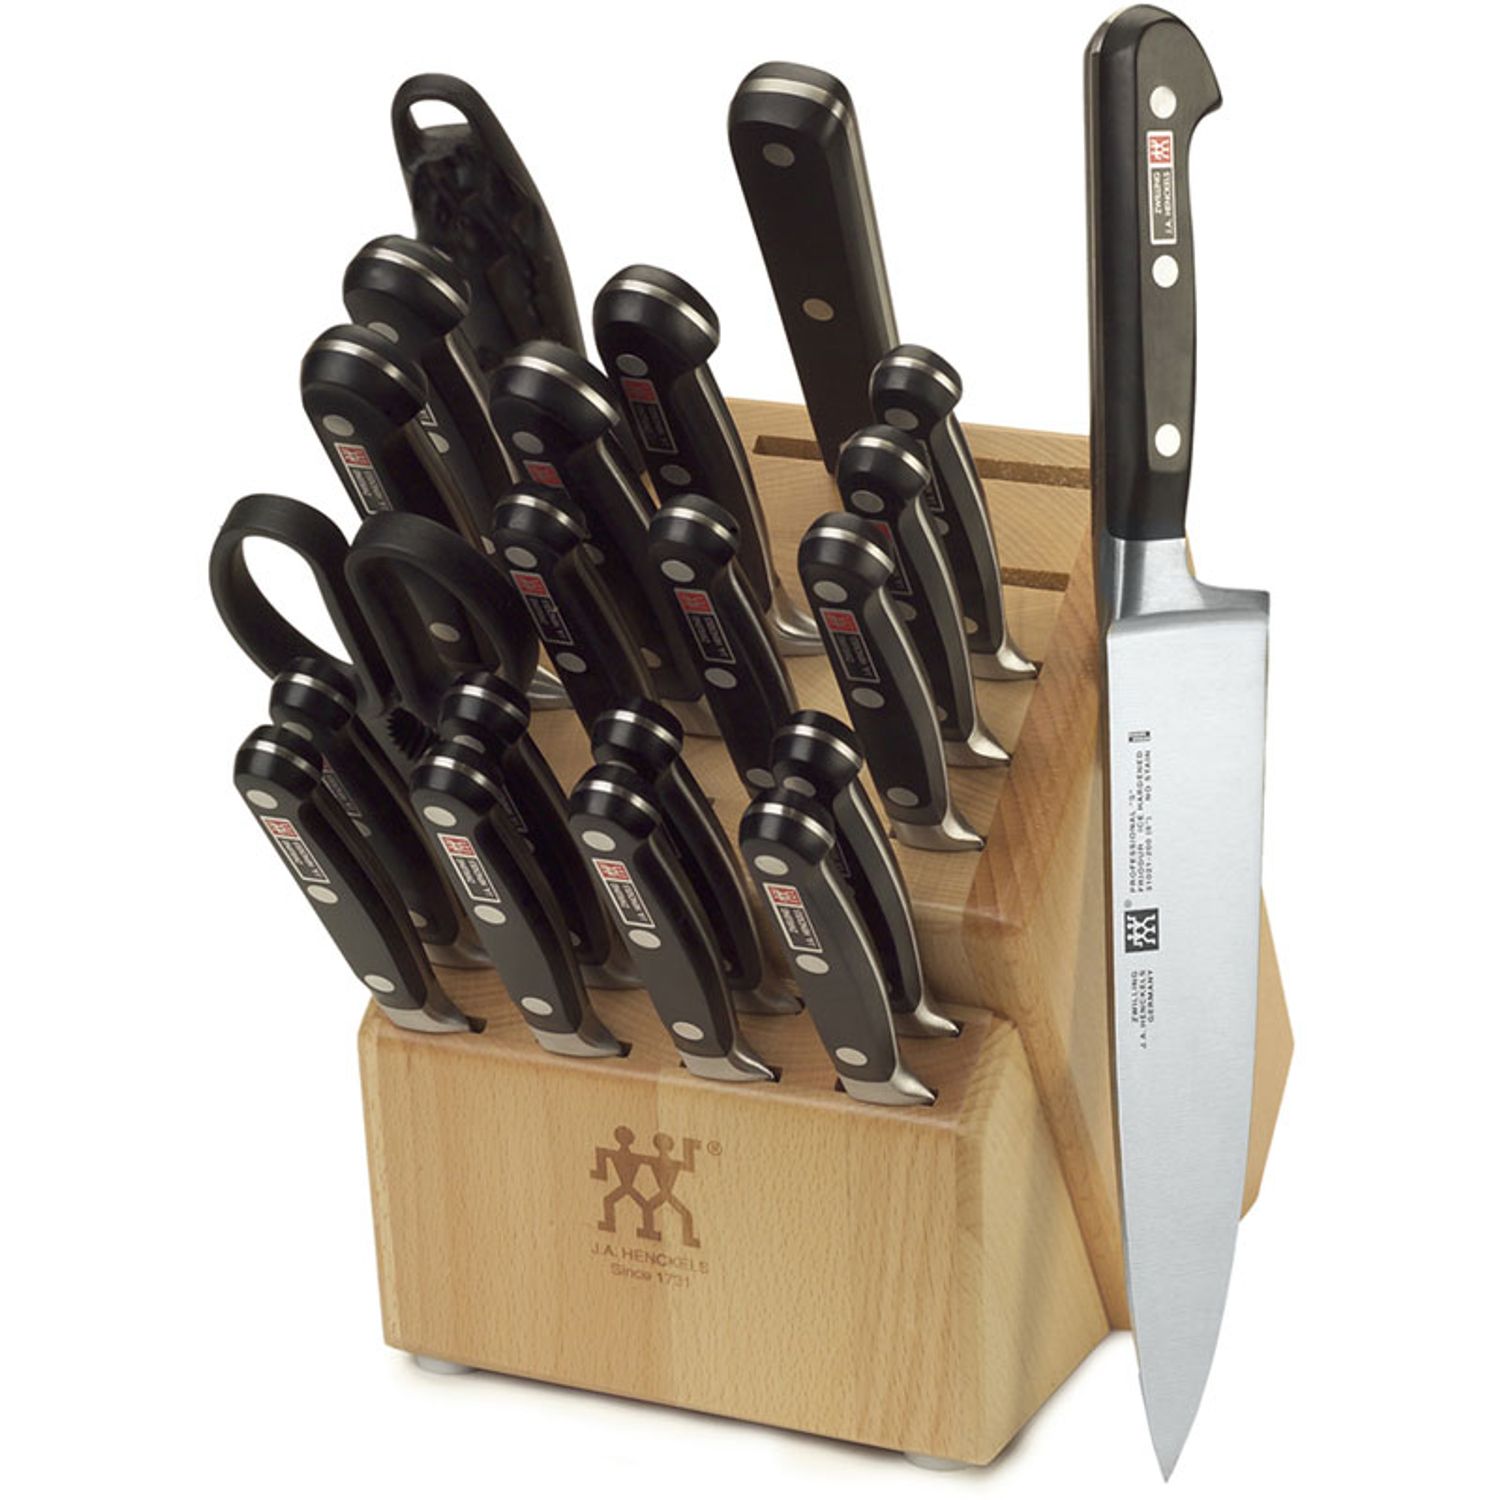 21 piece kitchen cutlery set